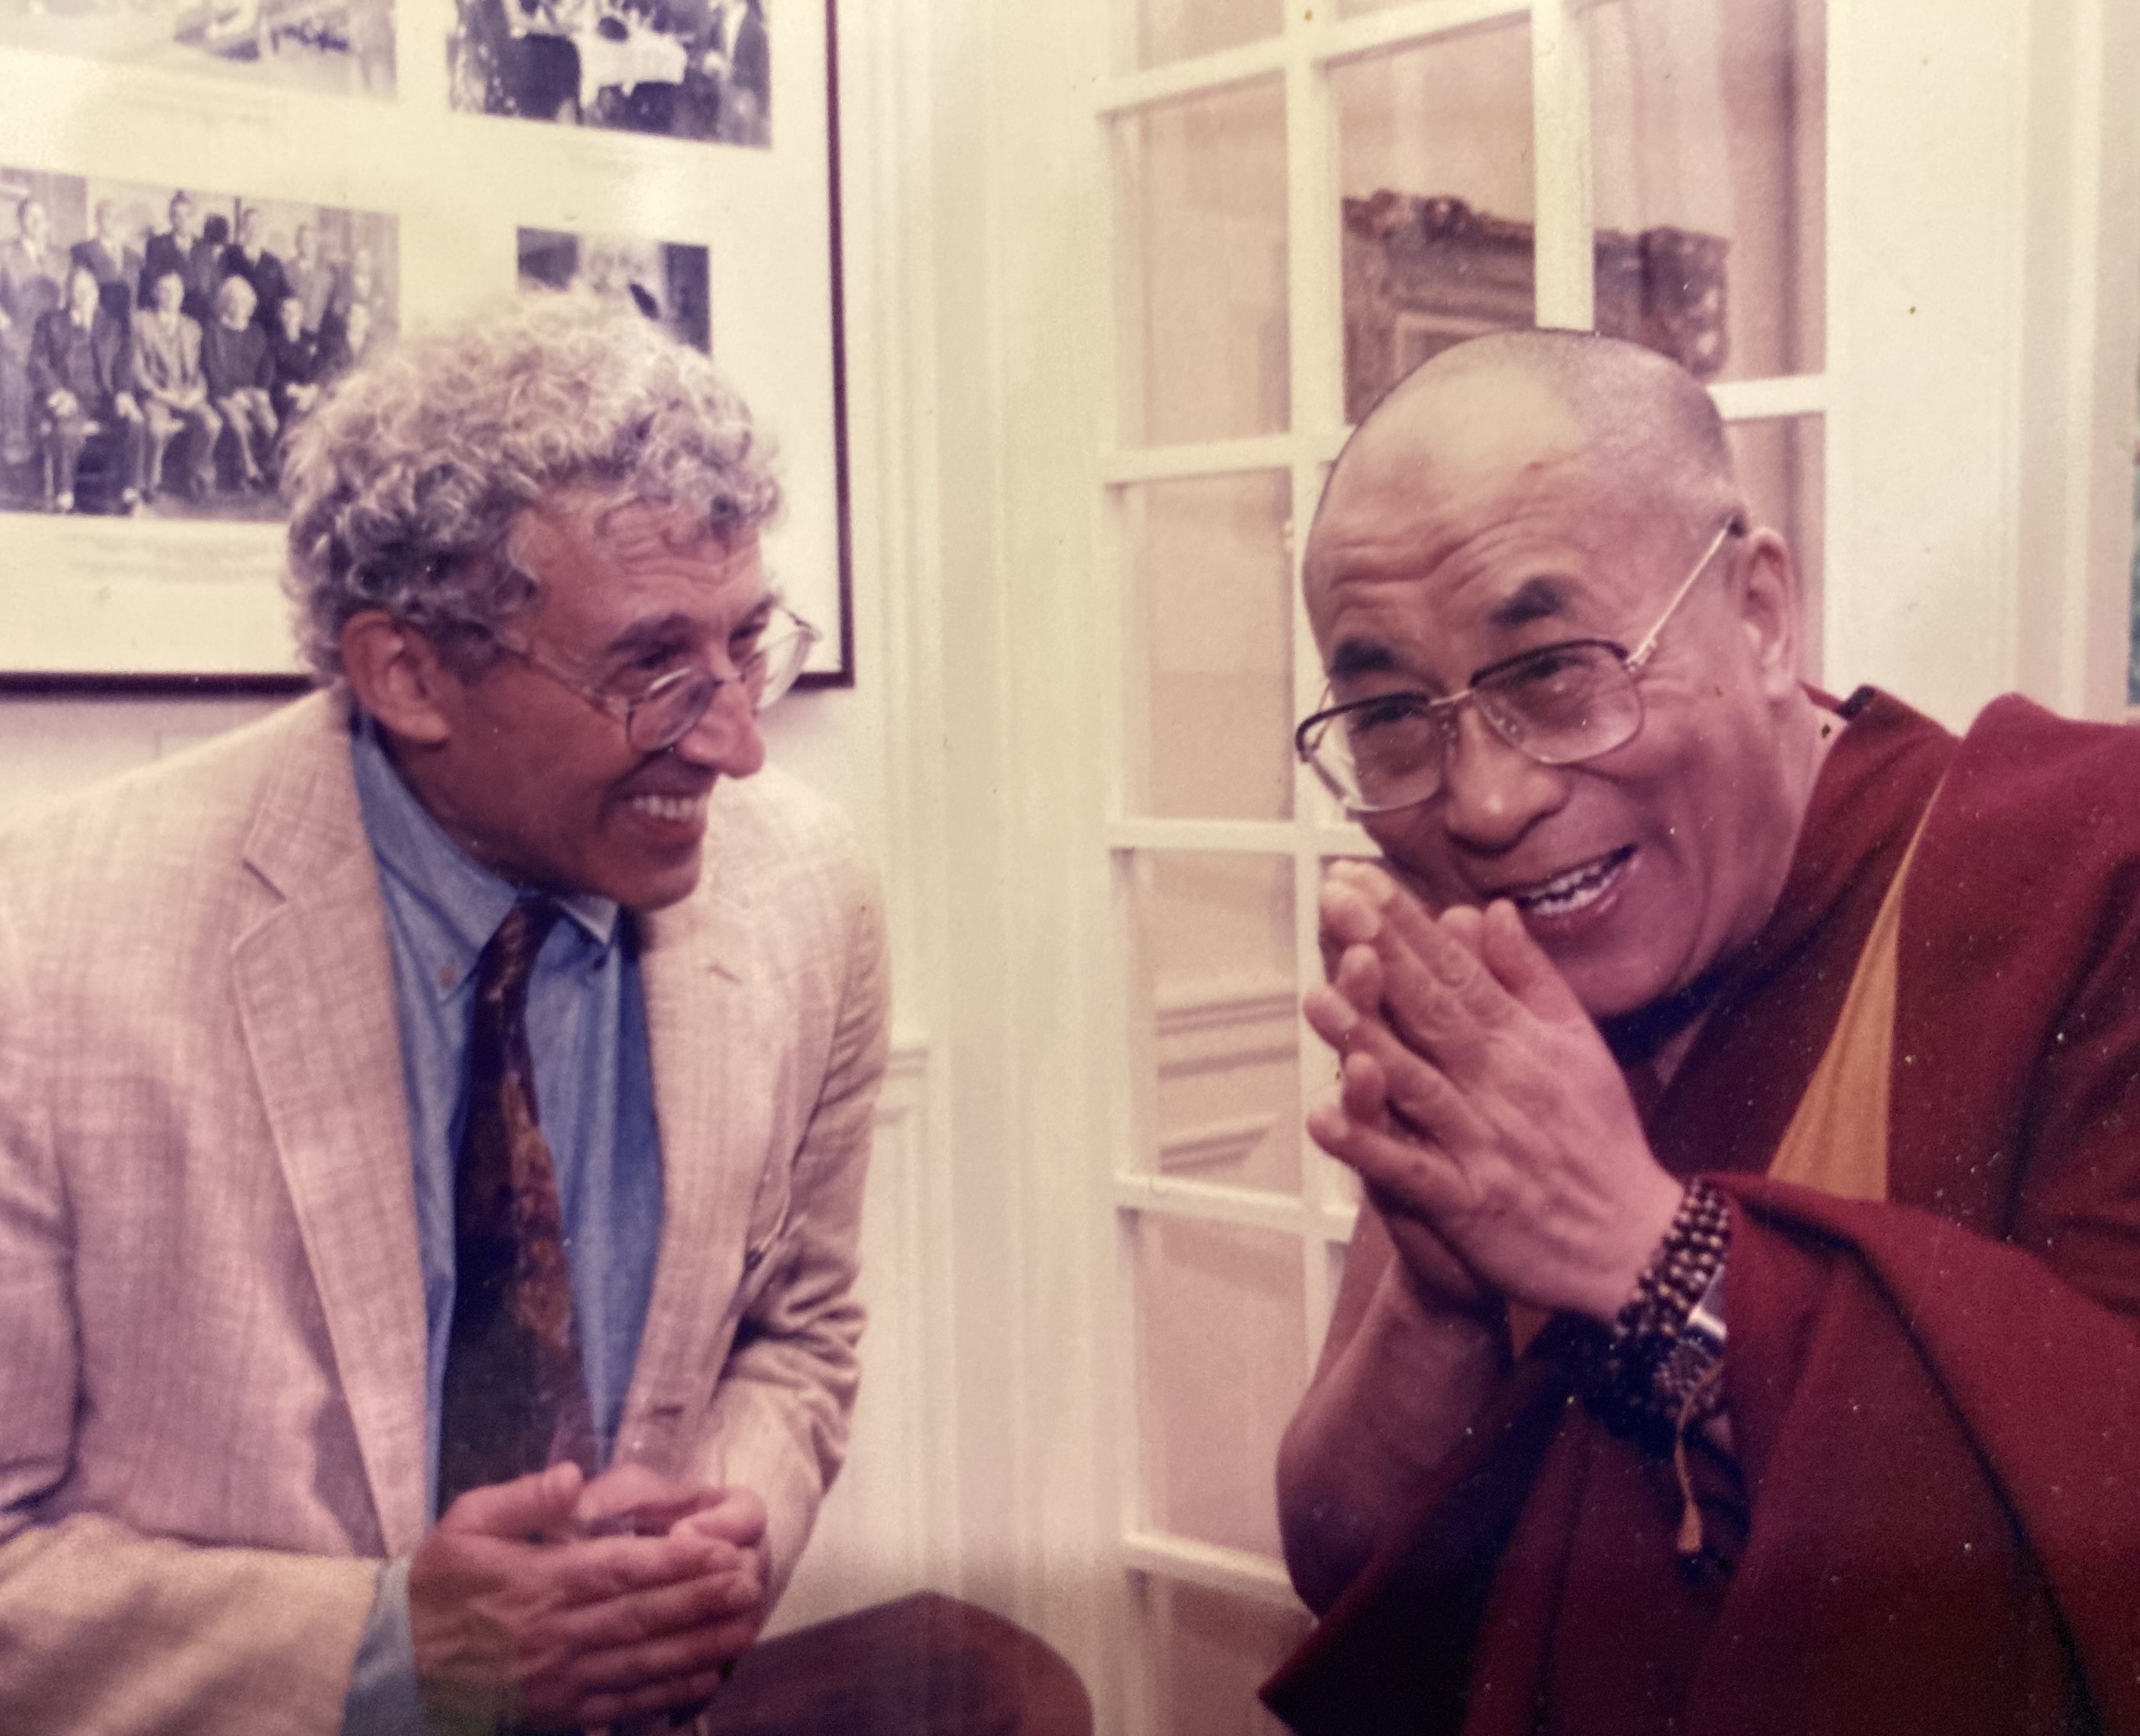 Gordie and the Dalai Lama